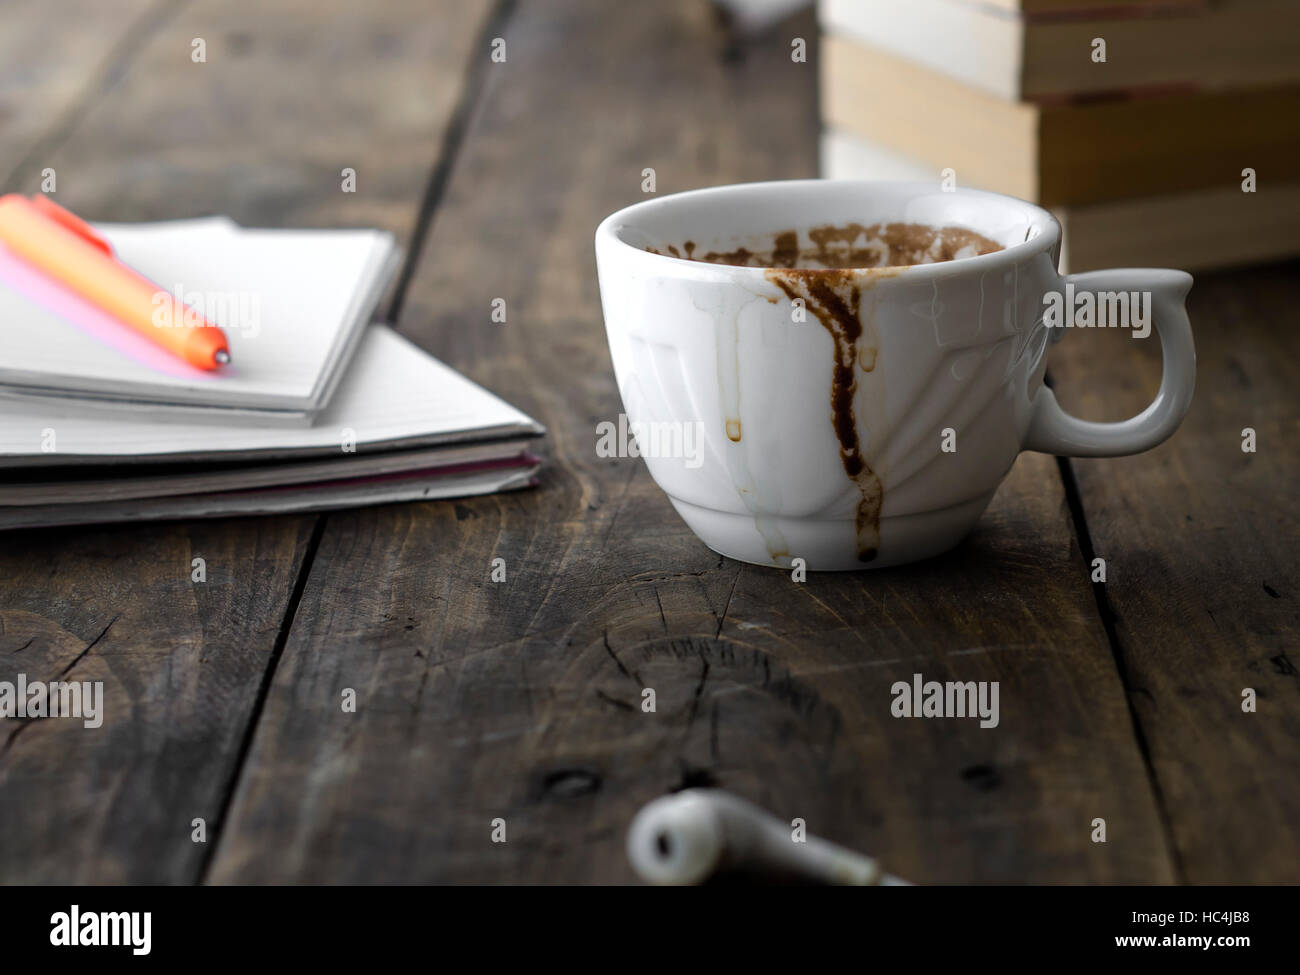 Escritorio de trabajo ocupado con taza espresso manchada Foto de stock